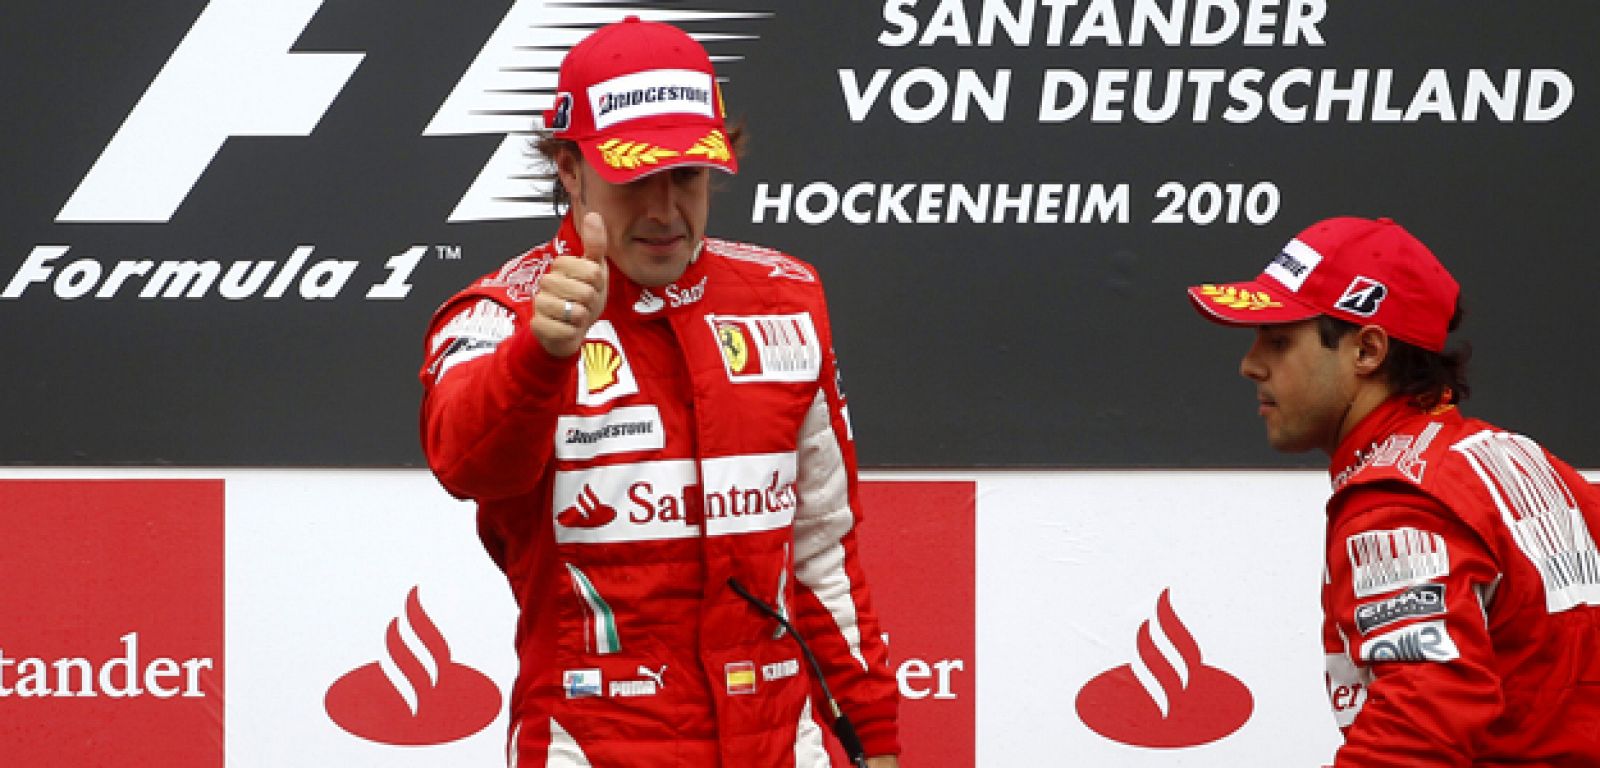 Al final Ferrari se libra de la sanción de la FIA y Alonso mantiene sus opciones al título.